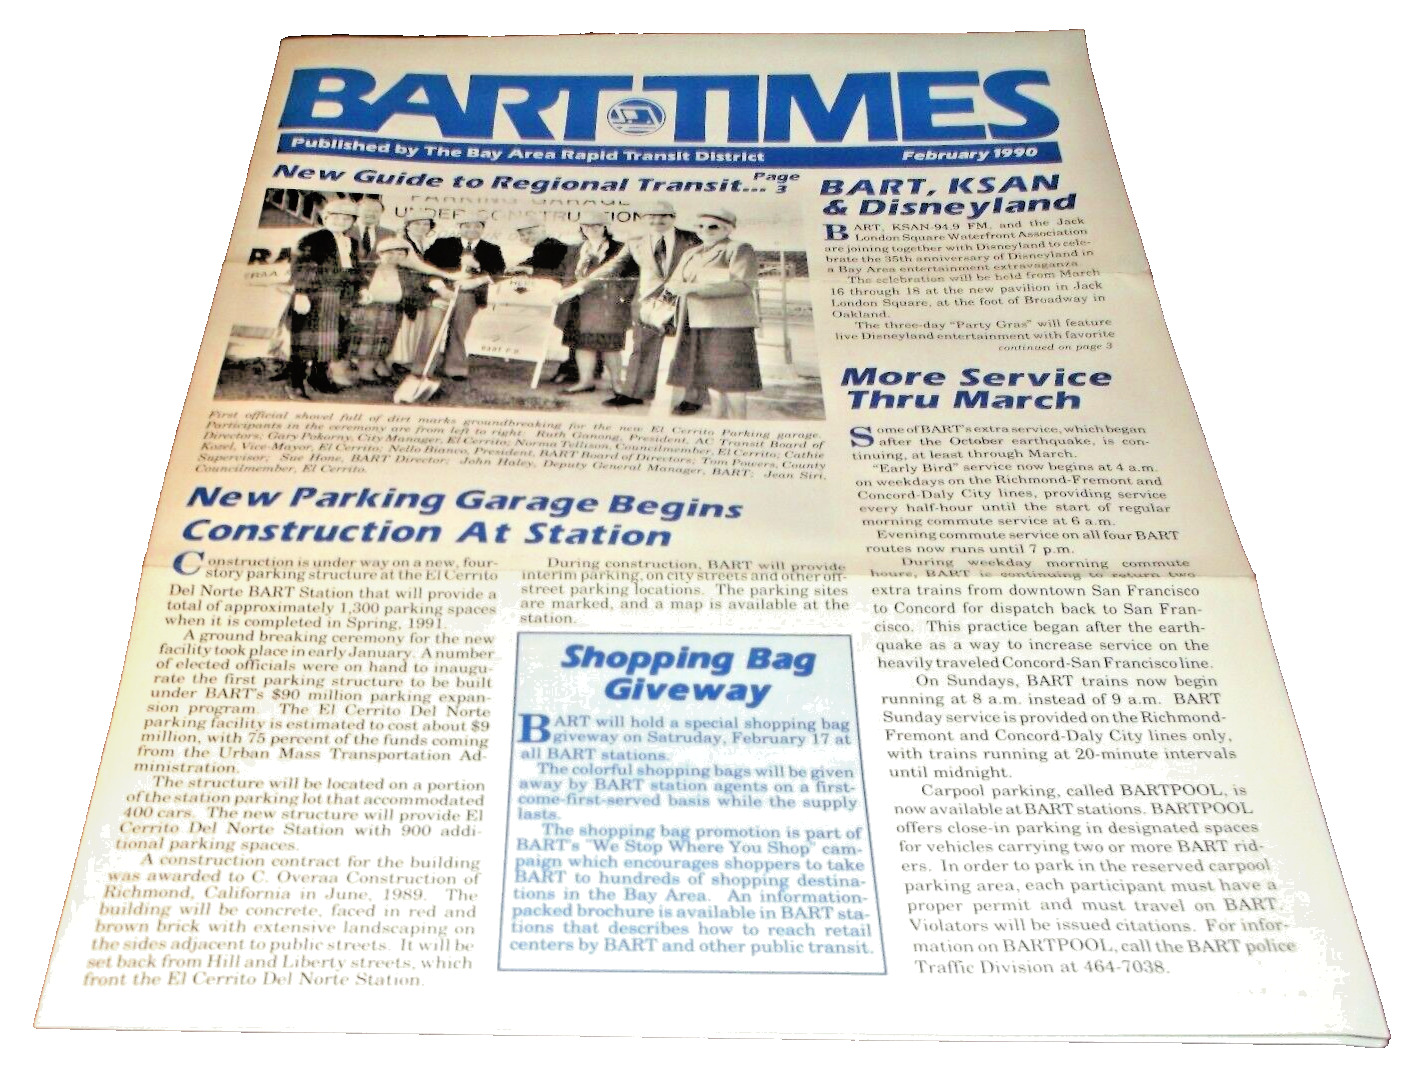 FEBRUARY 1990 BART TIMES NEWSLETTER